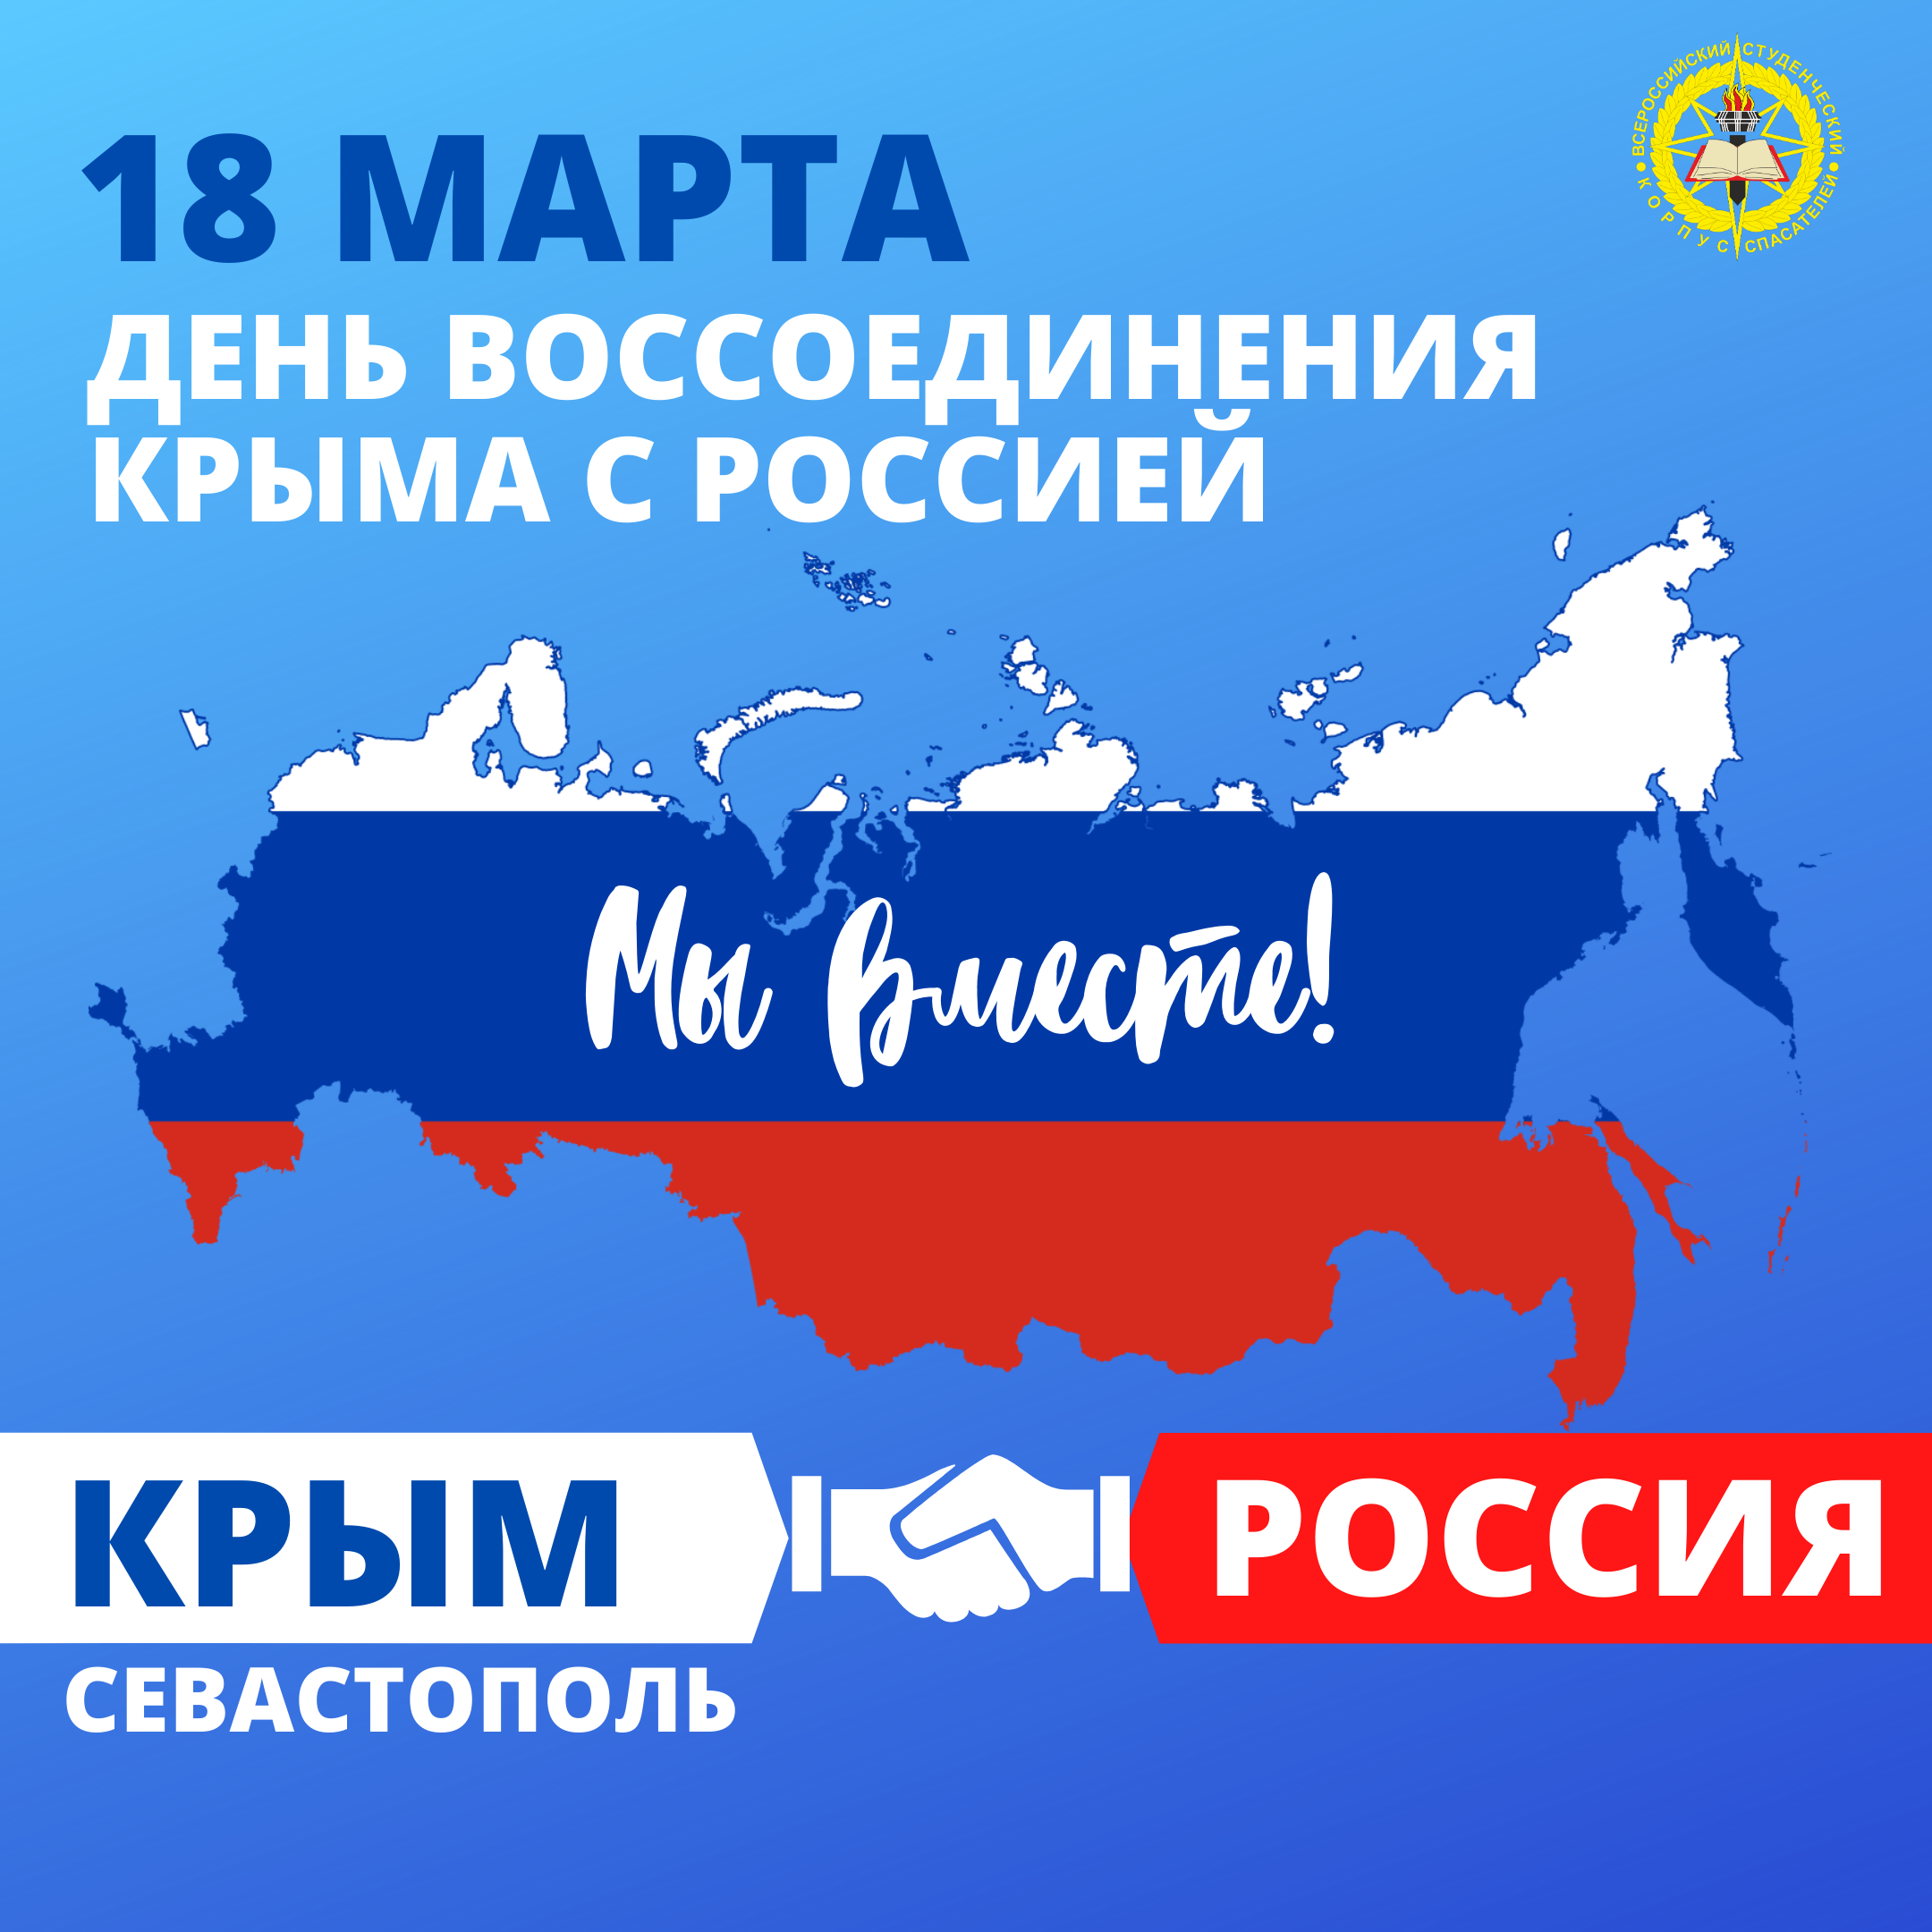 9-ая годовщина воссоединения Крыма с Россией.